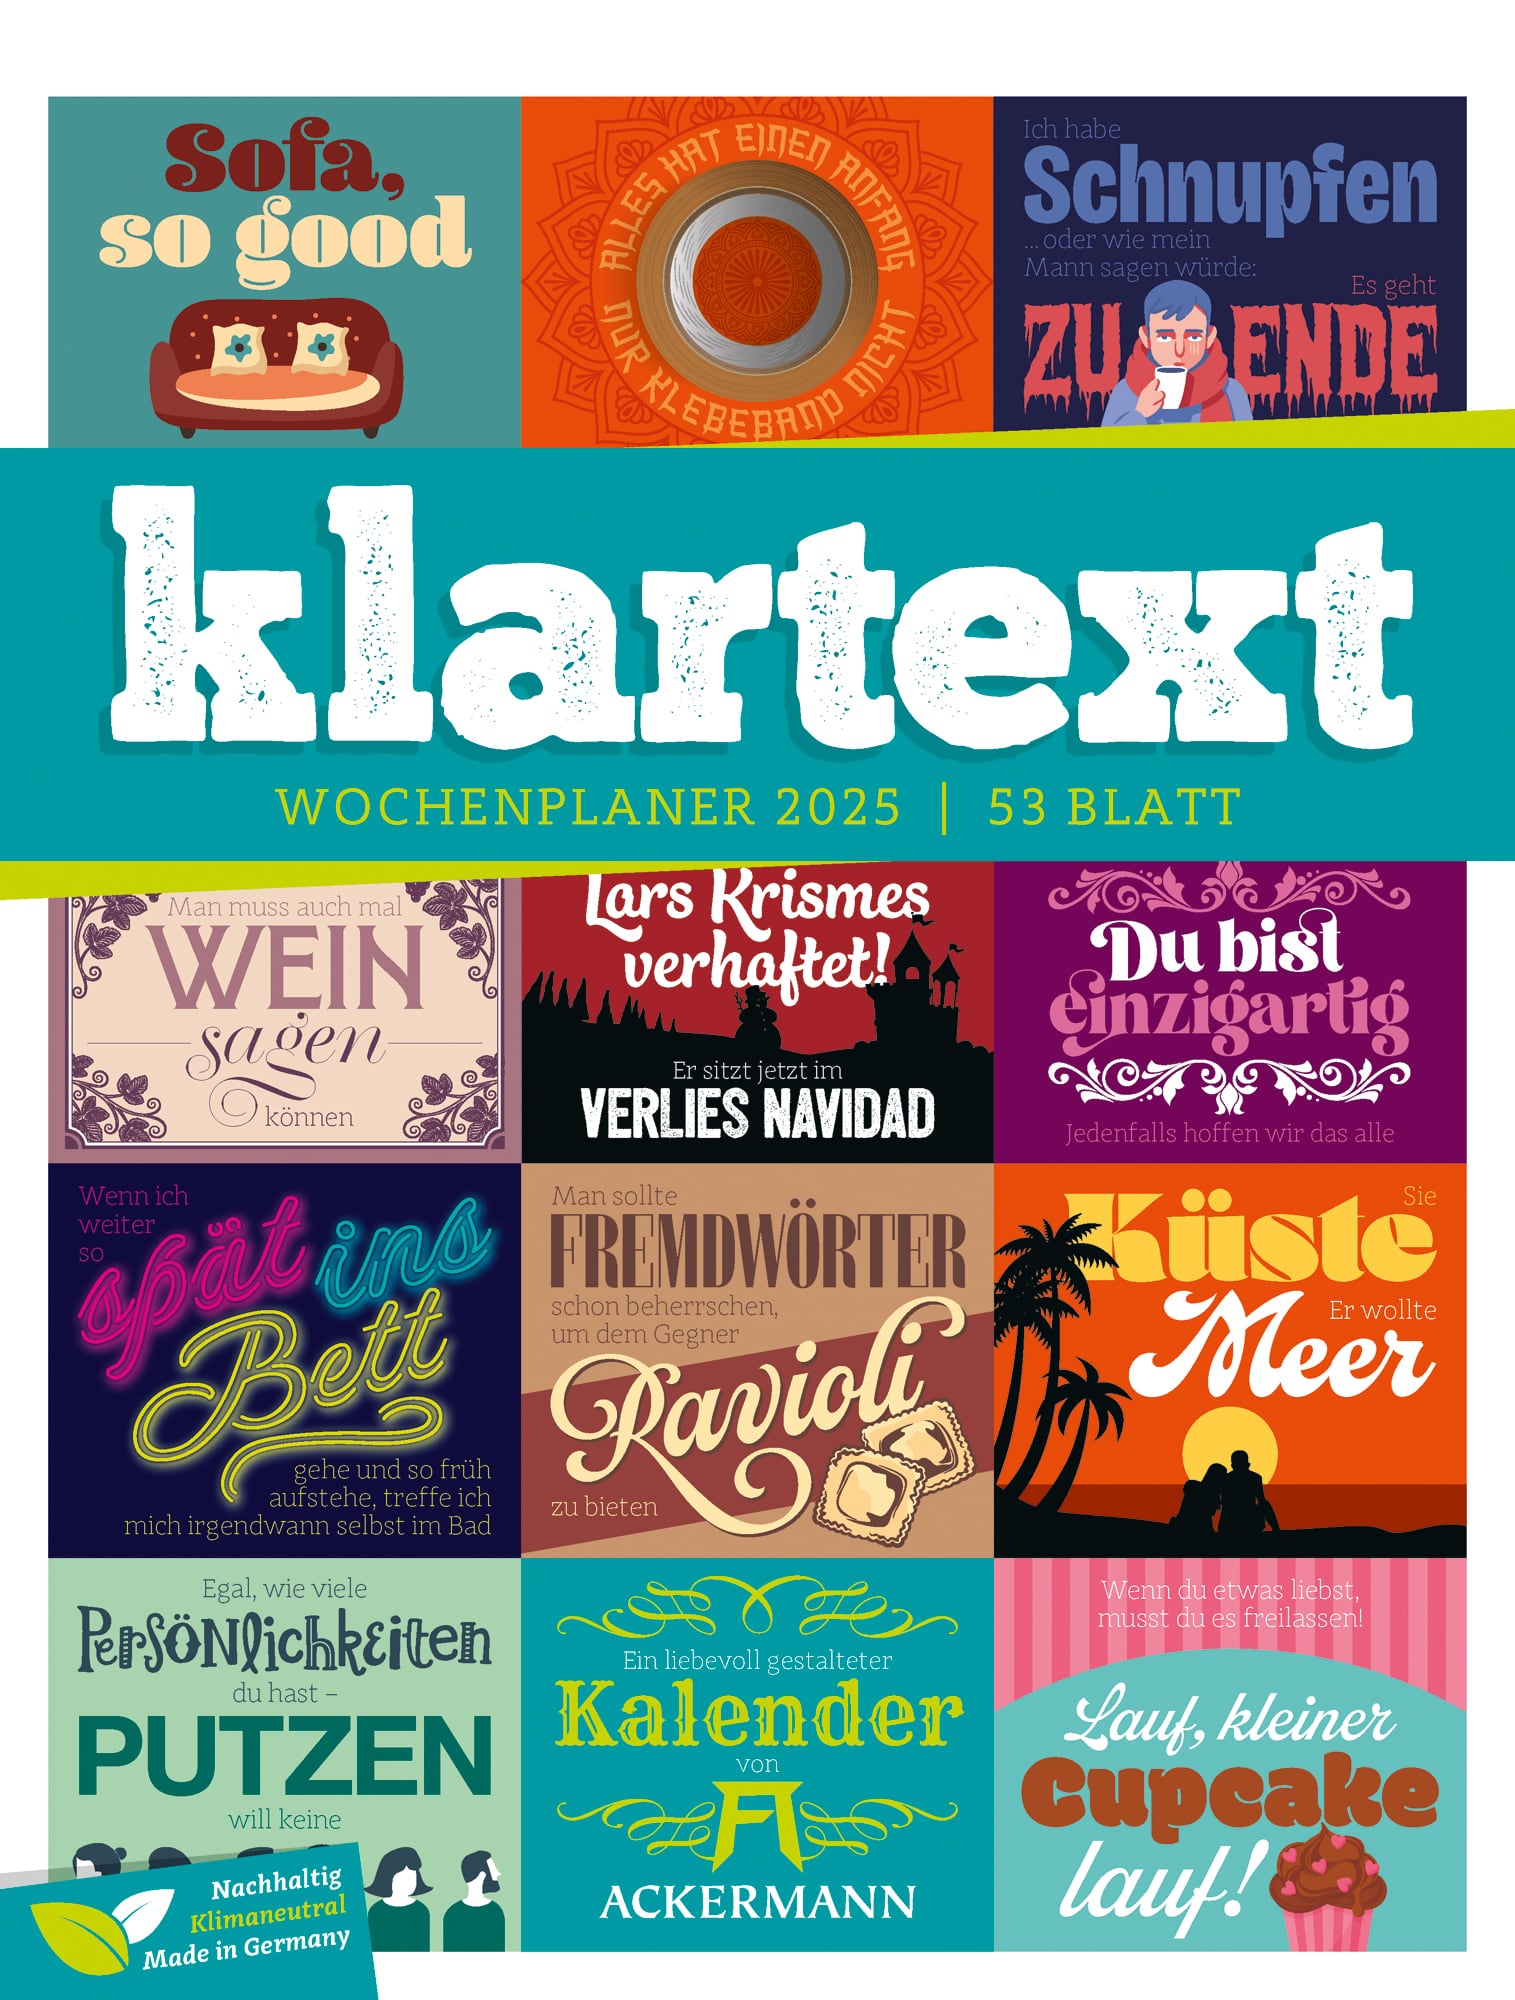 Ackermann Kalender Klartext - Wochenplaner 2025 - Titelblatt